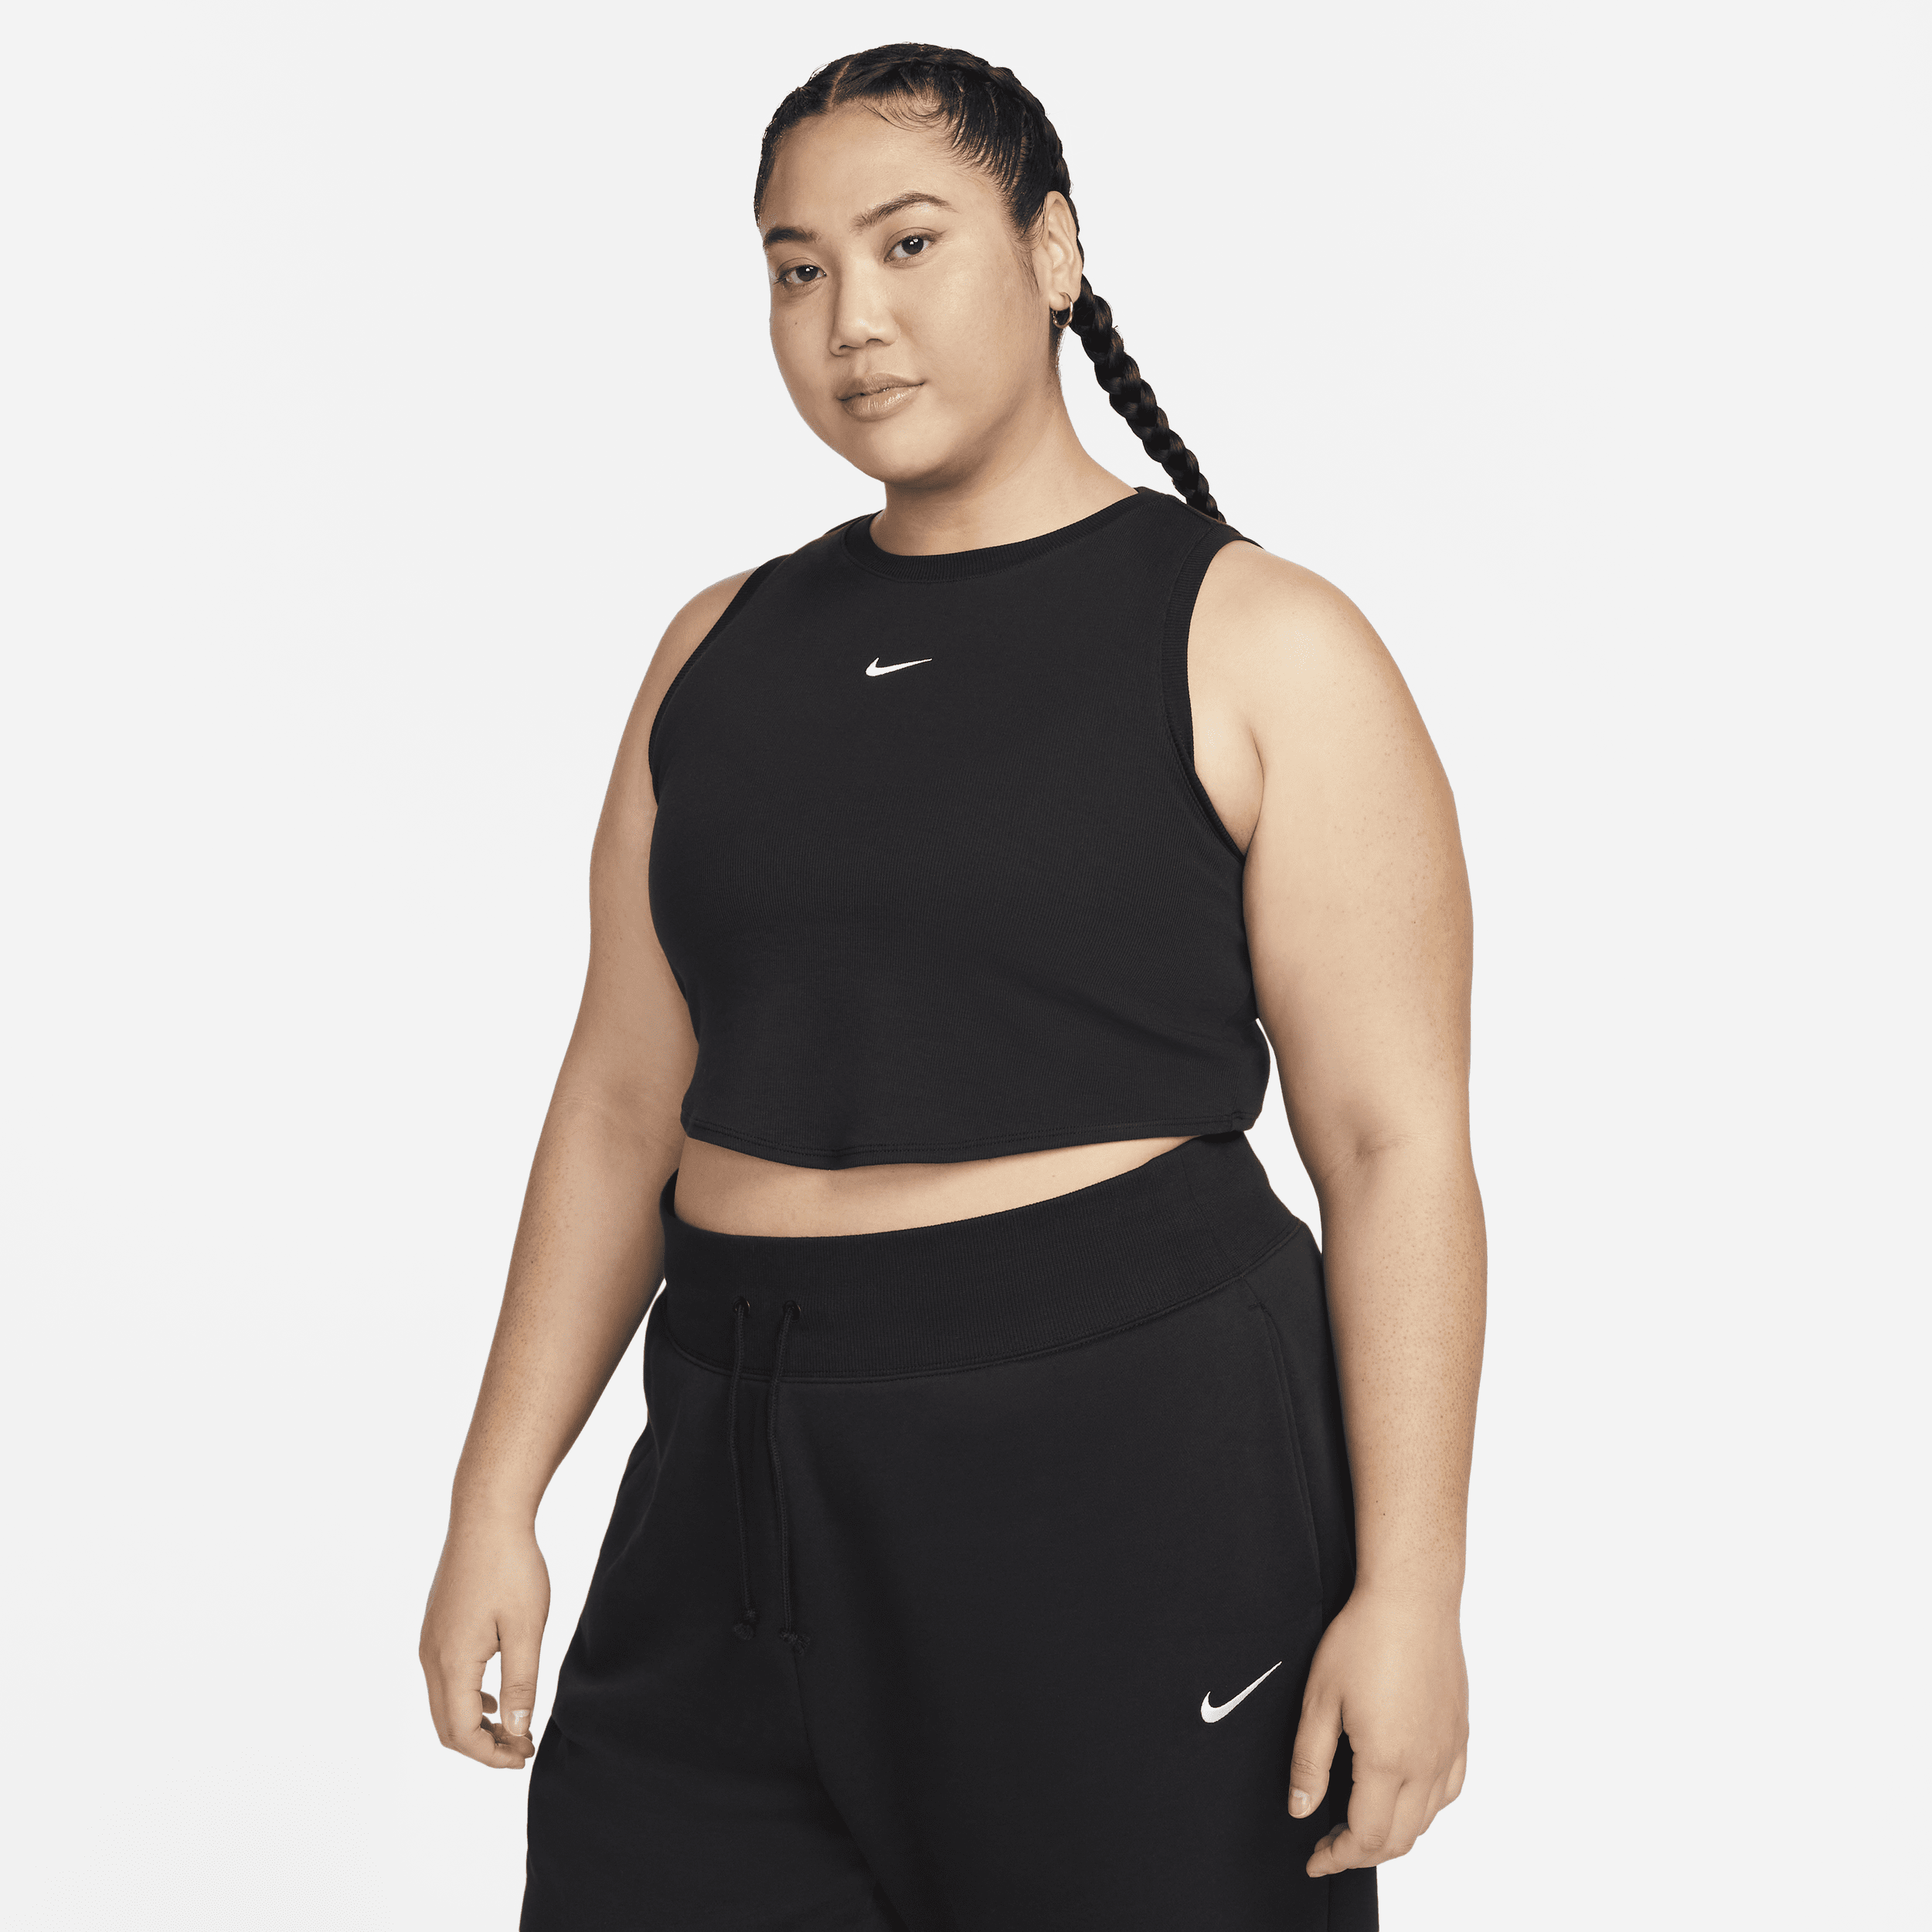 Canotta corta e aderente a mini costine Nike Sportswear Chill Knit – Donna - Nero